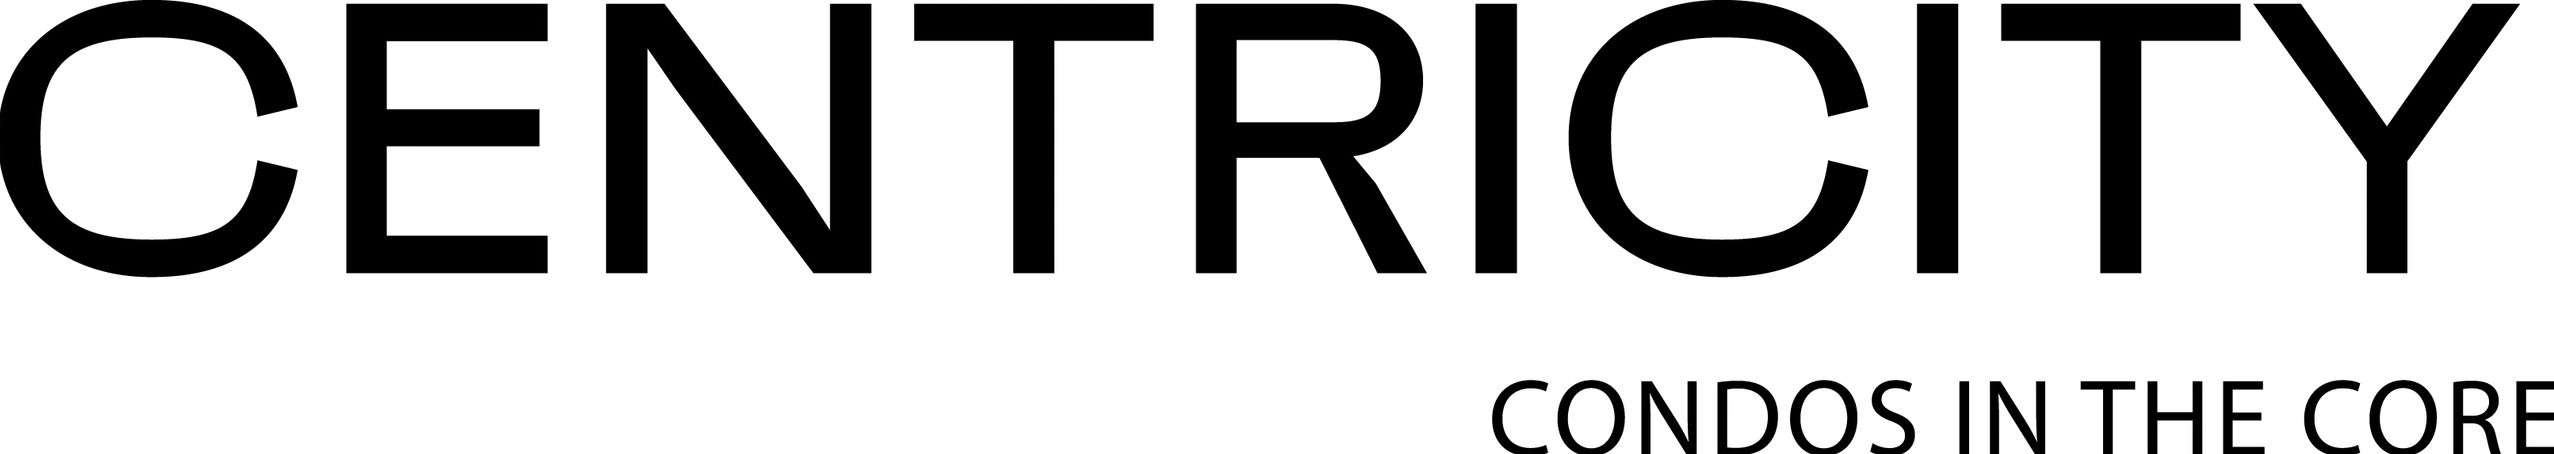 Centricity Condo Logo